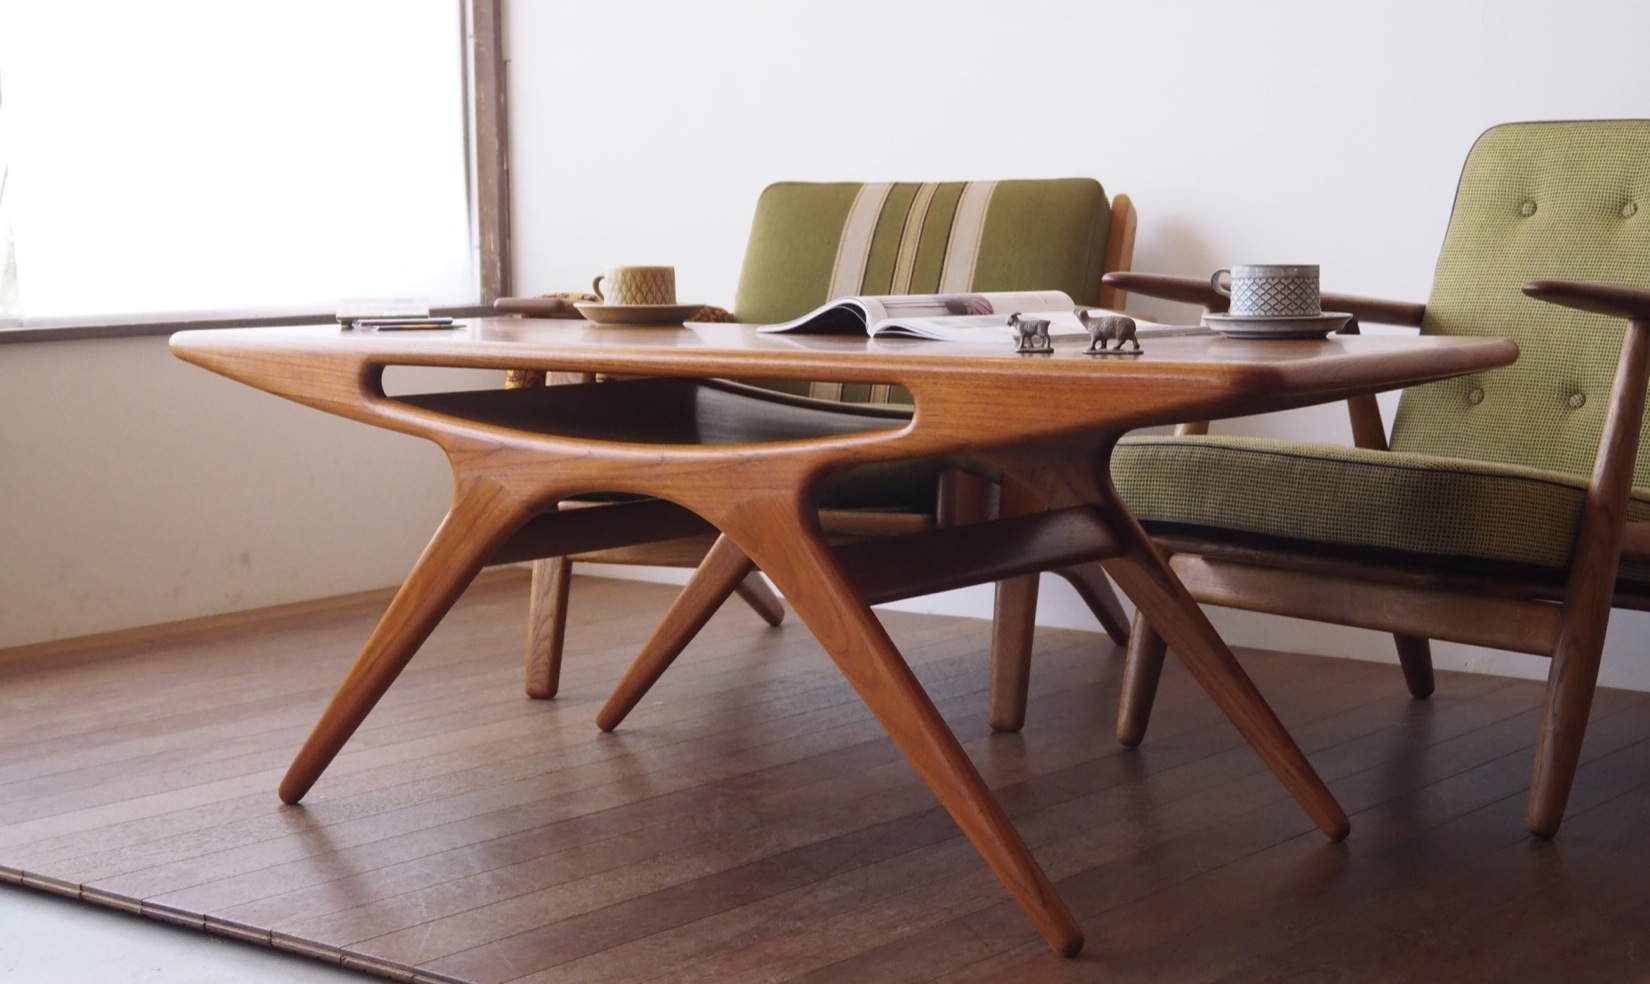 ヨハネス・アンダーセンの家具たちの魅力 - 北欧家具tanukiのブログ